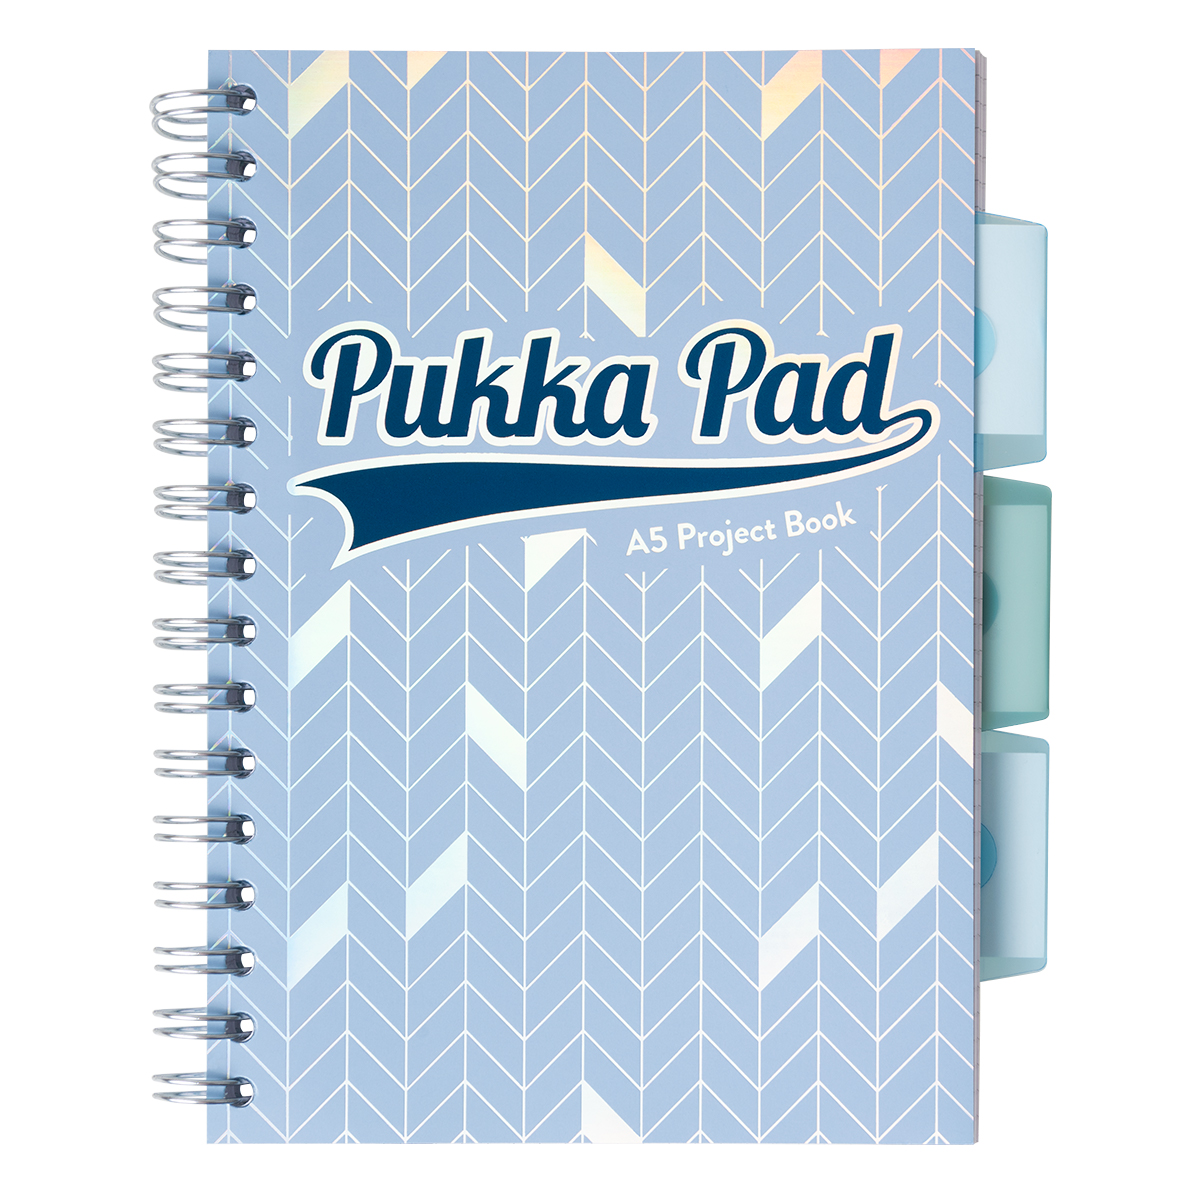 Caiet cu spirala si separatoare Pukka Pads Project Book Glee 200 pag matematica A5 albastru inchis